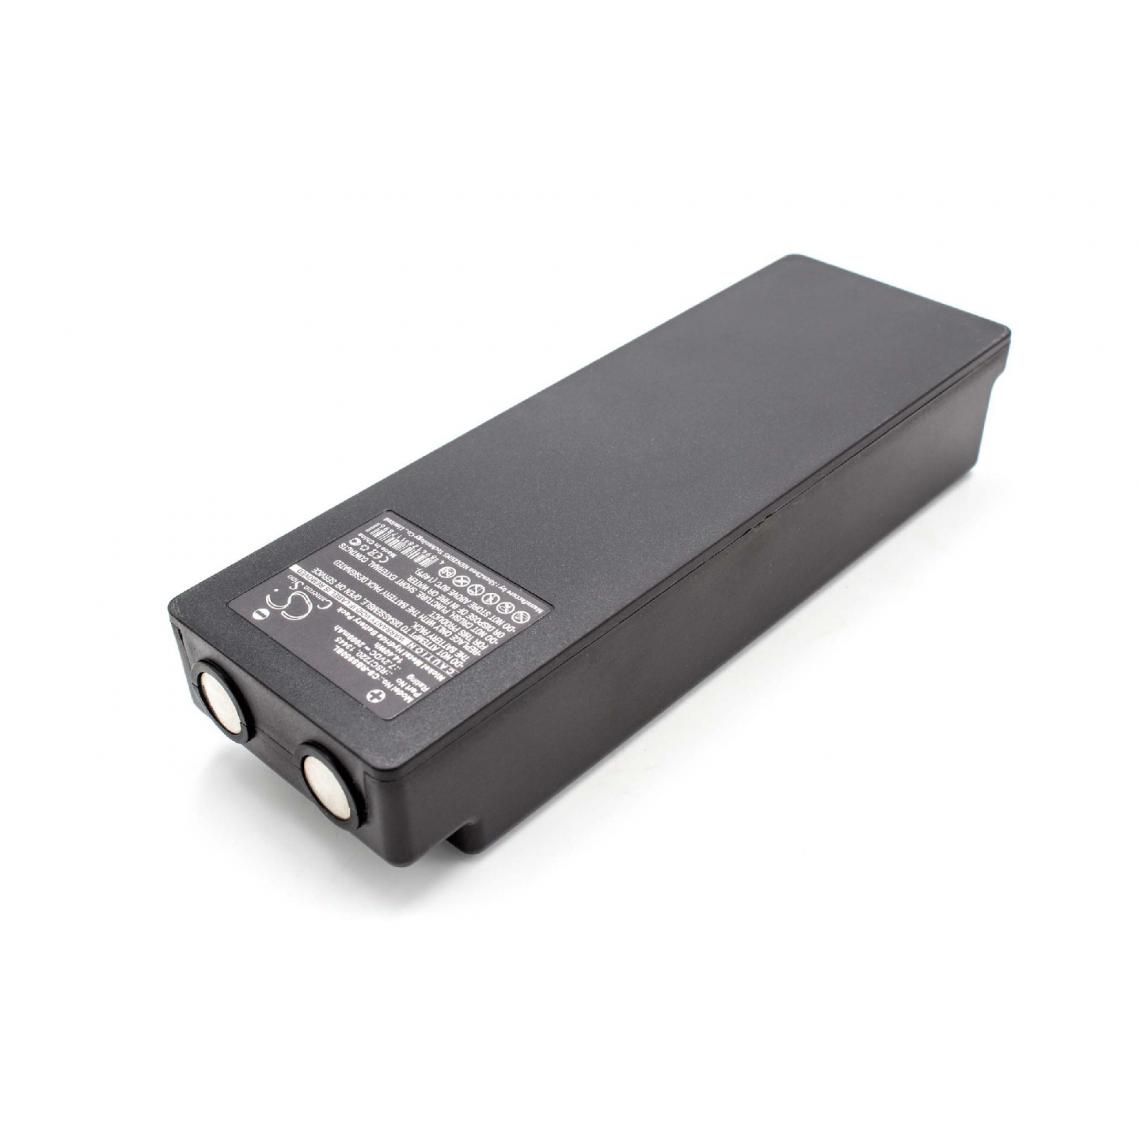 Vhbw - vhbw NiMH batterie 2000mAh (7.2V) pour télécommande pour grue Remote Control Palfinger Scanreco RC400, RC590, RC960, YWW0439 - Autre appareil de mesure